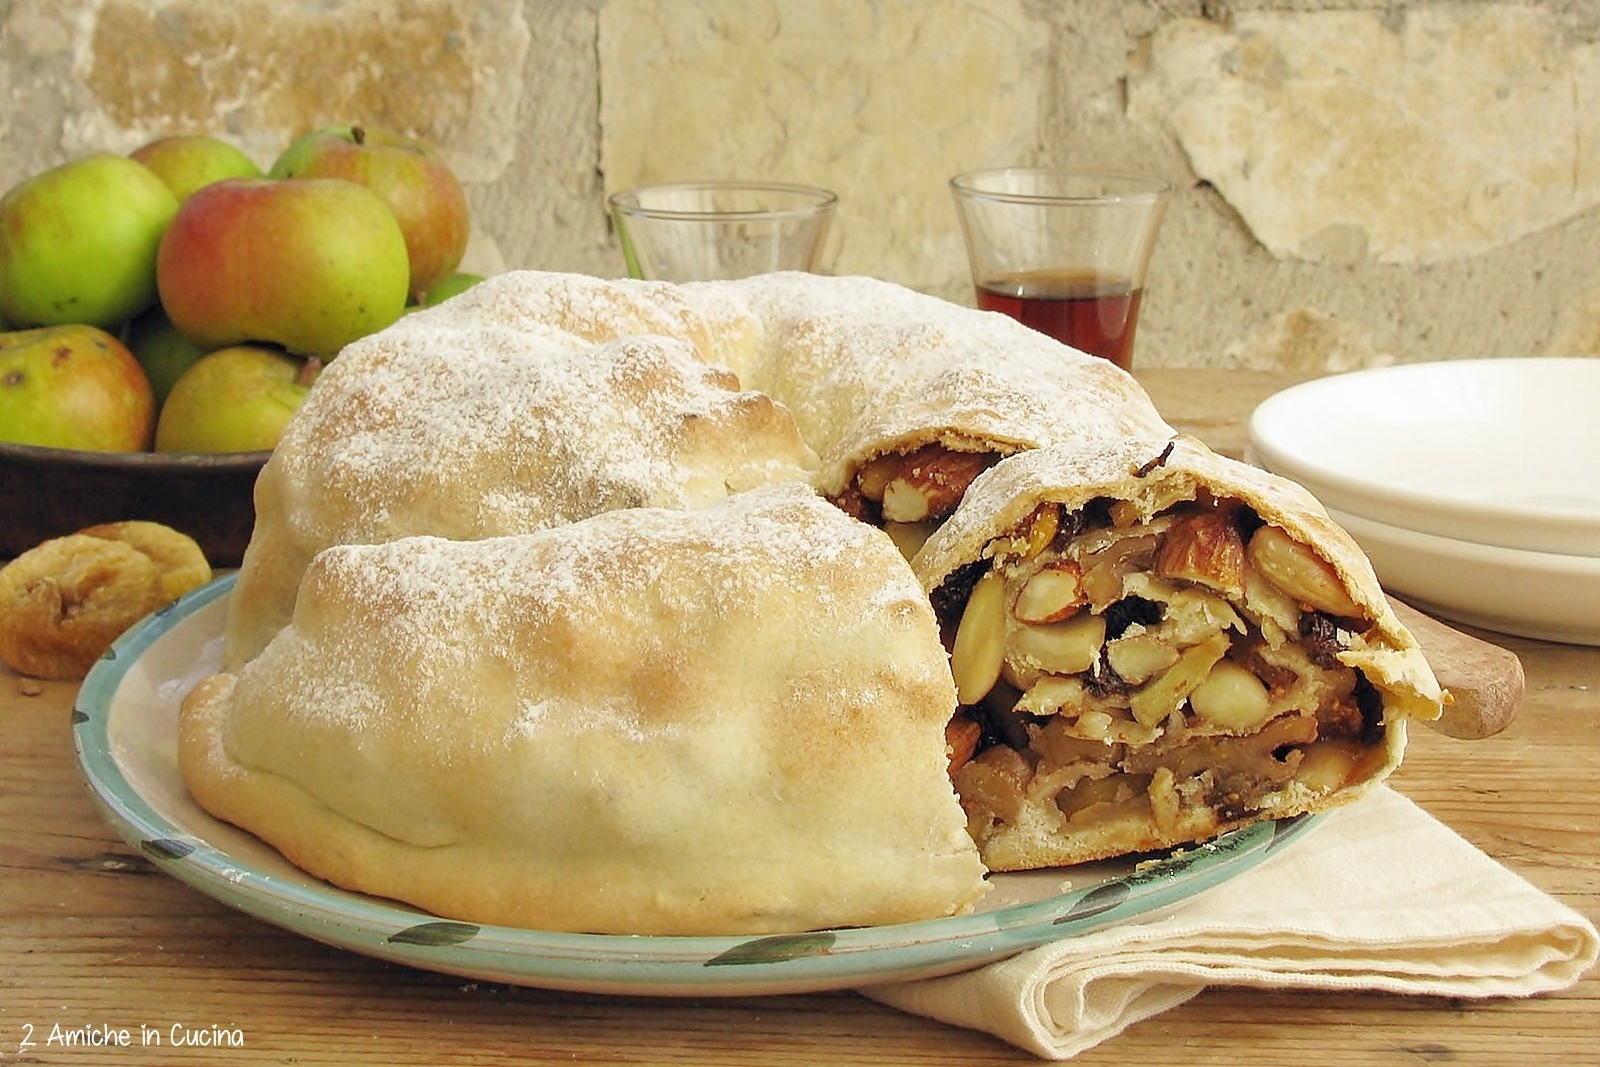 Dolci Natalizi Umbria.Dolci Di Natale In Umbria 7 Ricette Della Tradizione 2 Amiche In Cucina